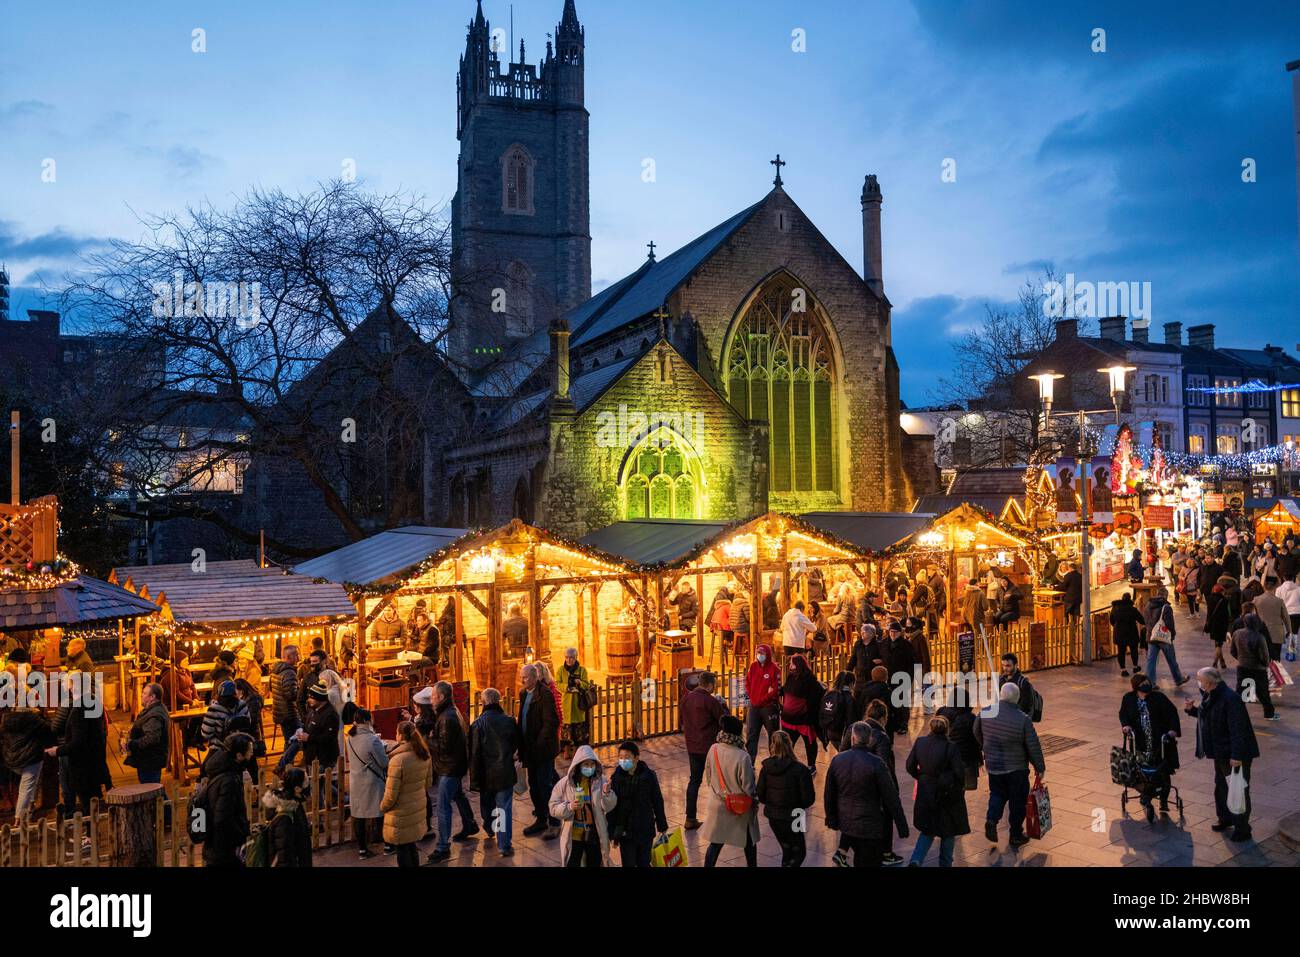 CARDIFF, GALLES - DICEMBRE 21: Una visione generale dei mercati natalizi il 21 dicembre 2021 a Cardiff, Galles. Oggi in Galles sono stati registrati 204 casi della variante del coronavirus Omicron, portando il totale attuale a 640. Foto Stock